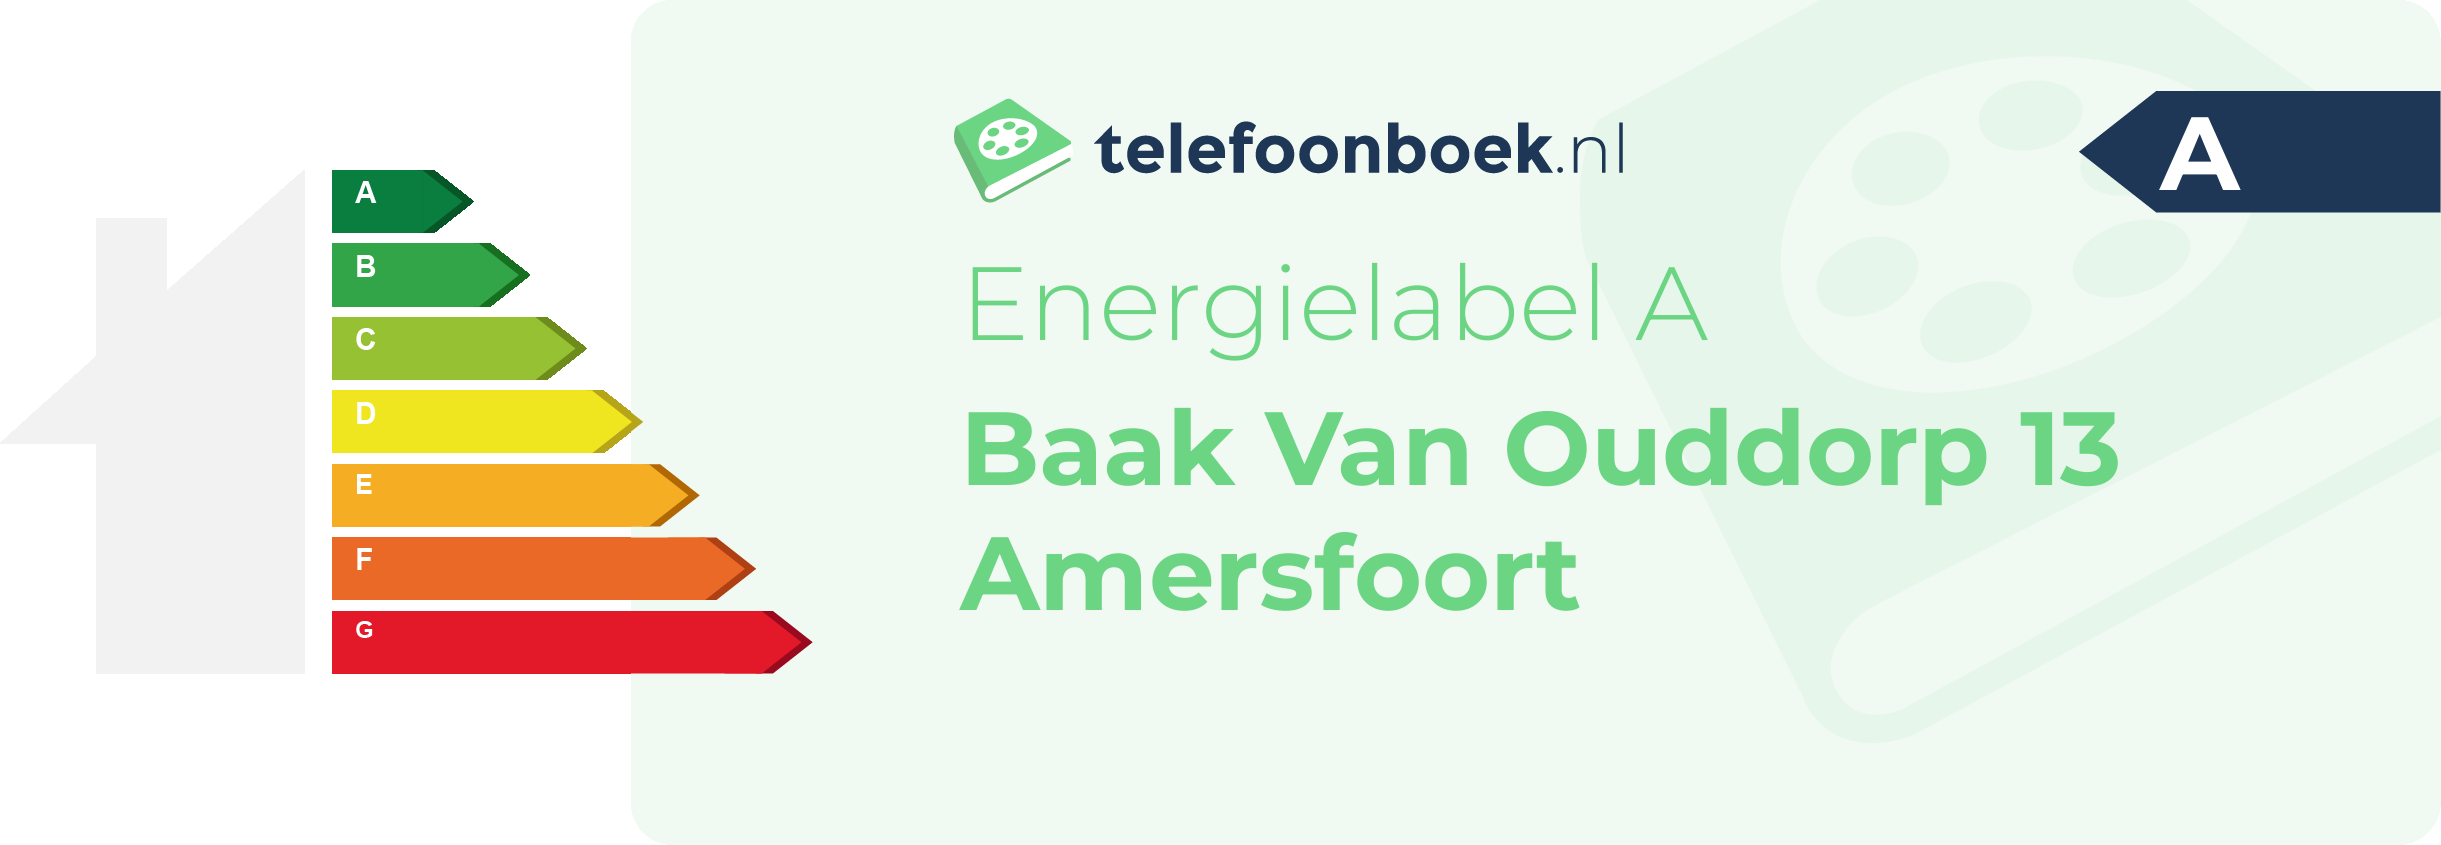 Energielabel Baak Van Ouddorp 13 Amersfoort